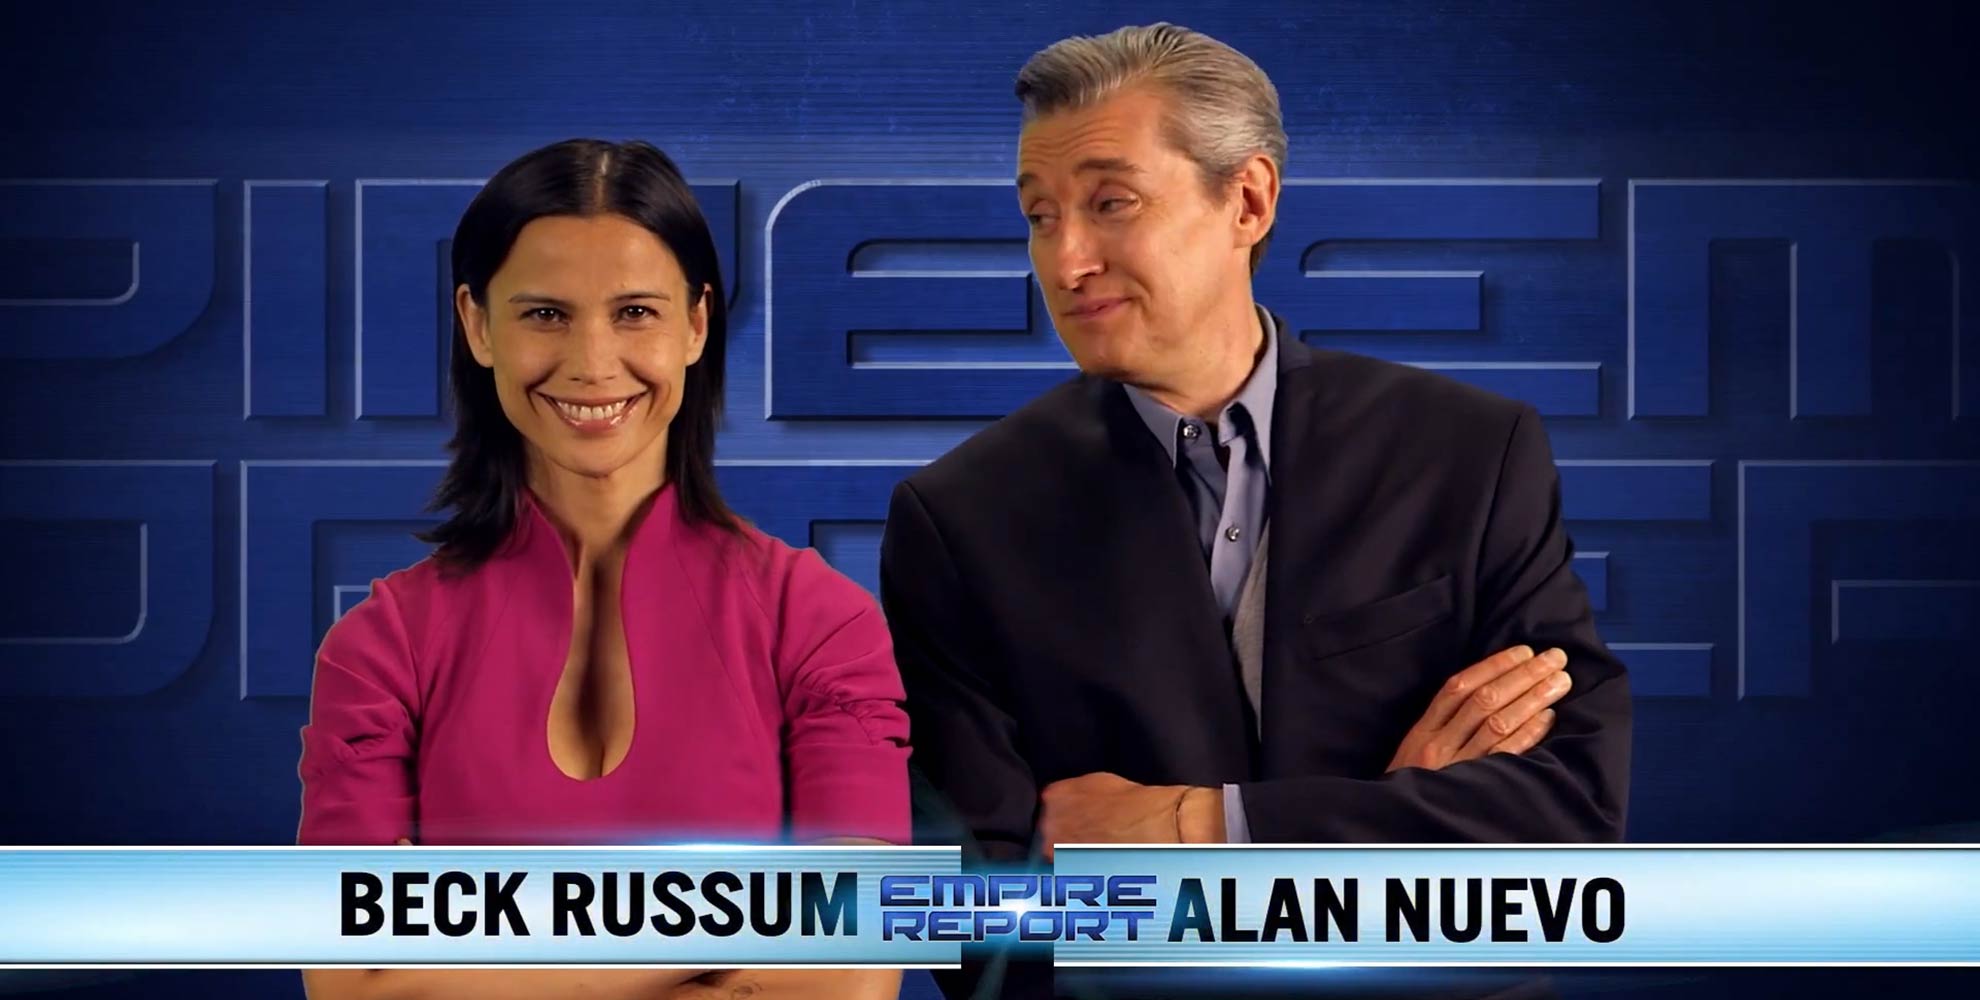 Star Citizen Empire Report : Beck Russum & Alan Nuevo